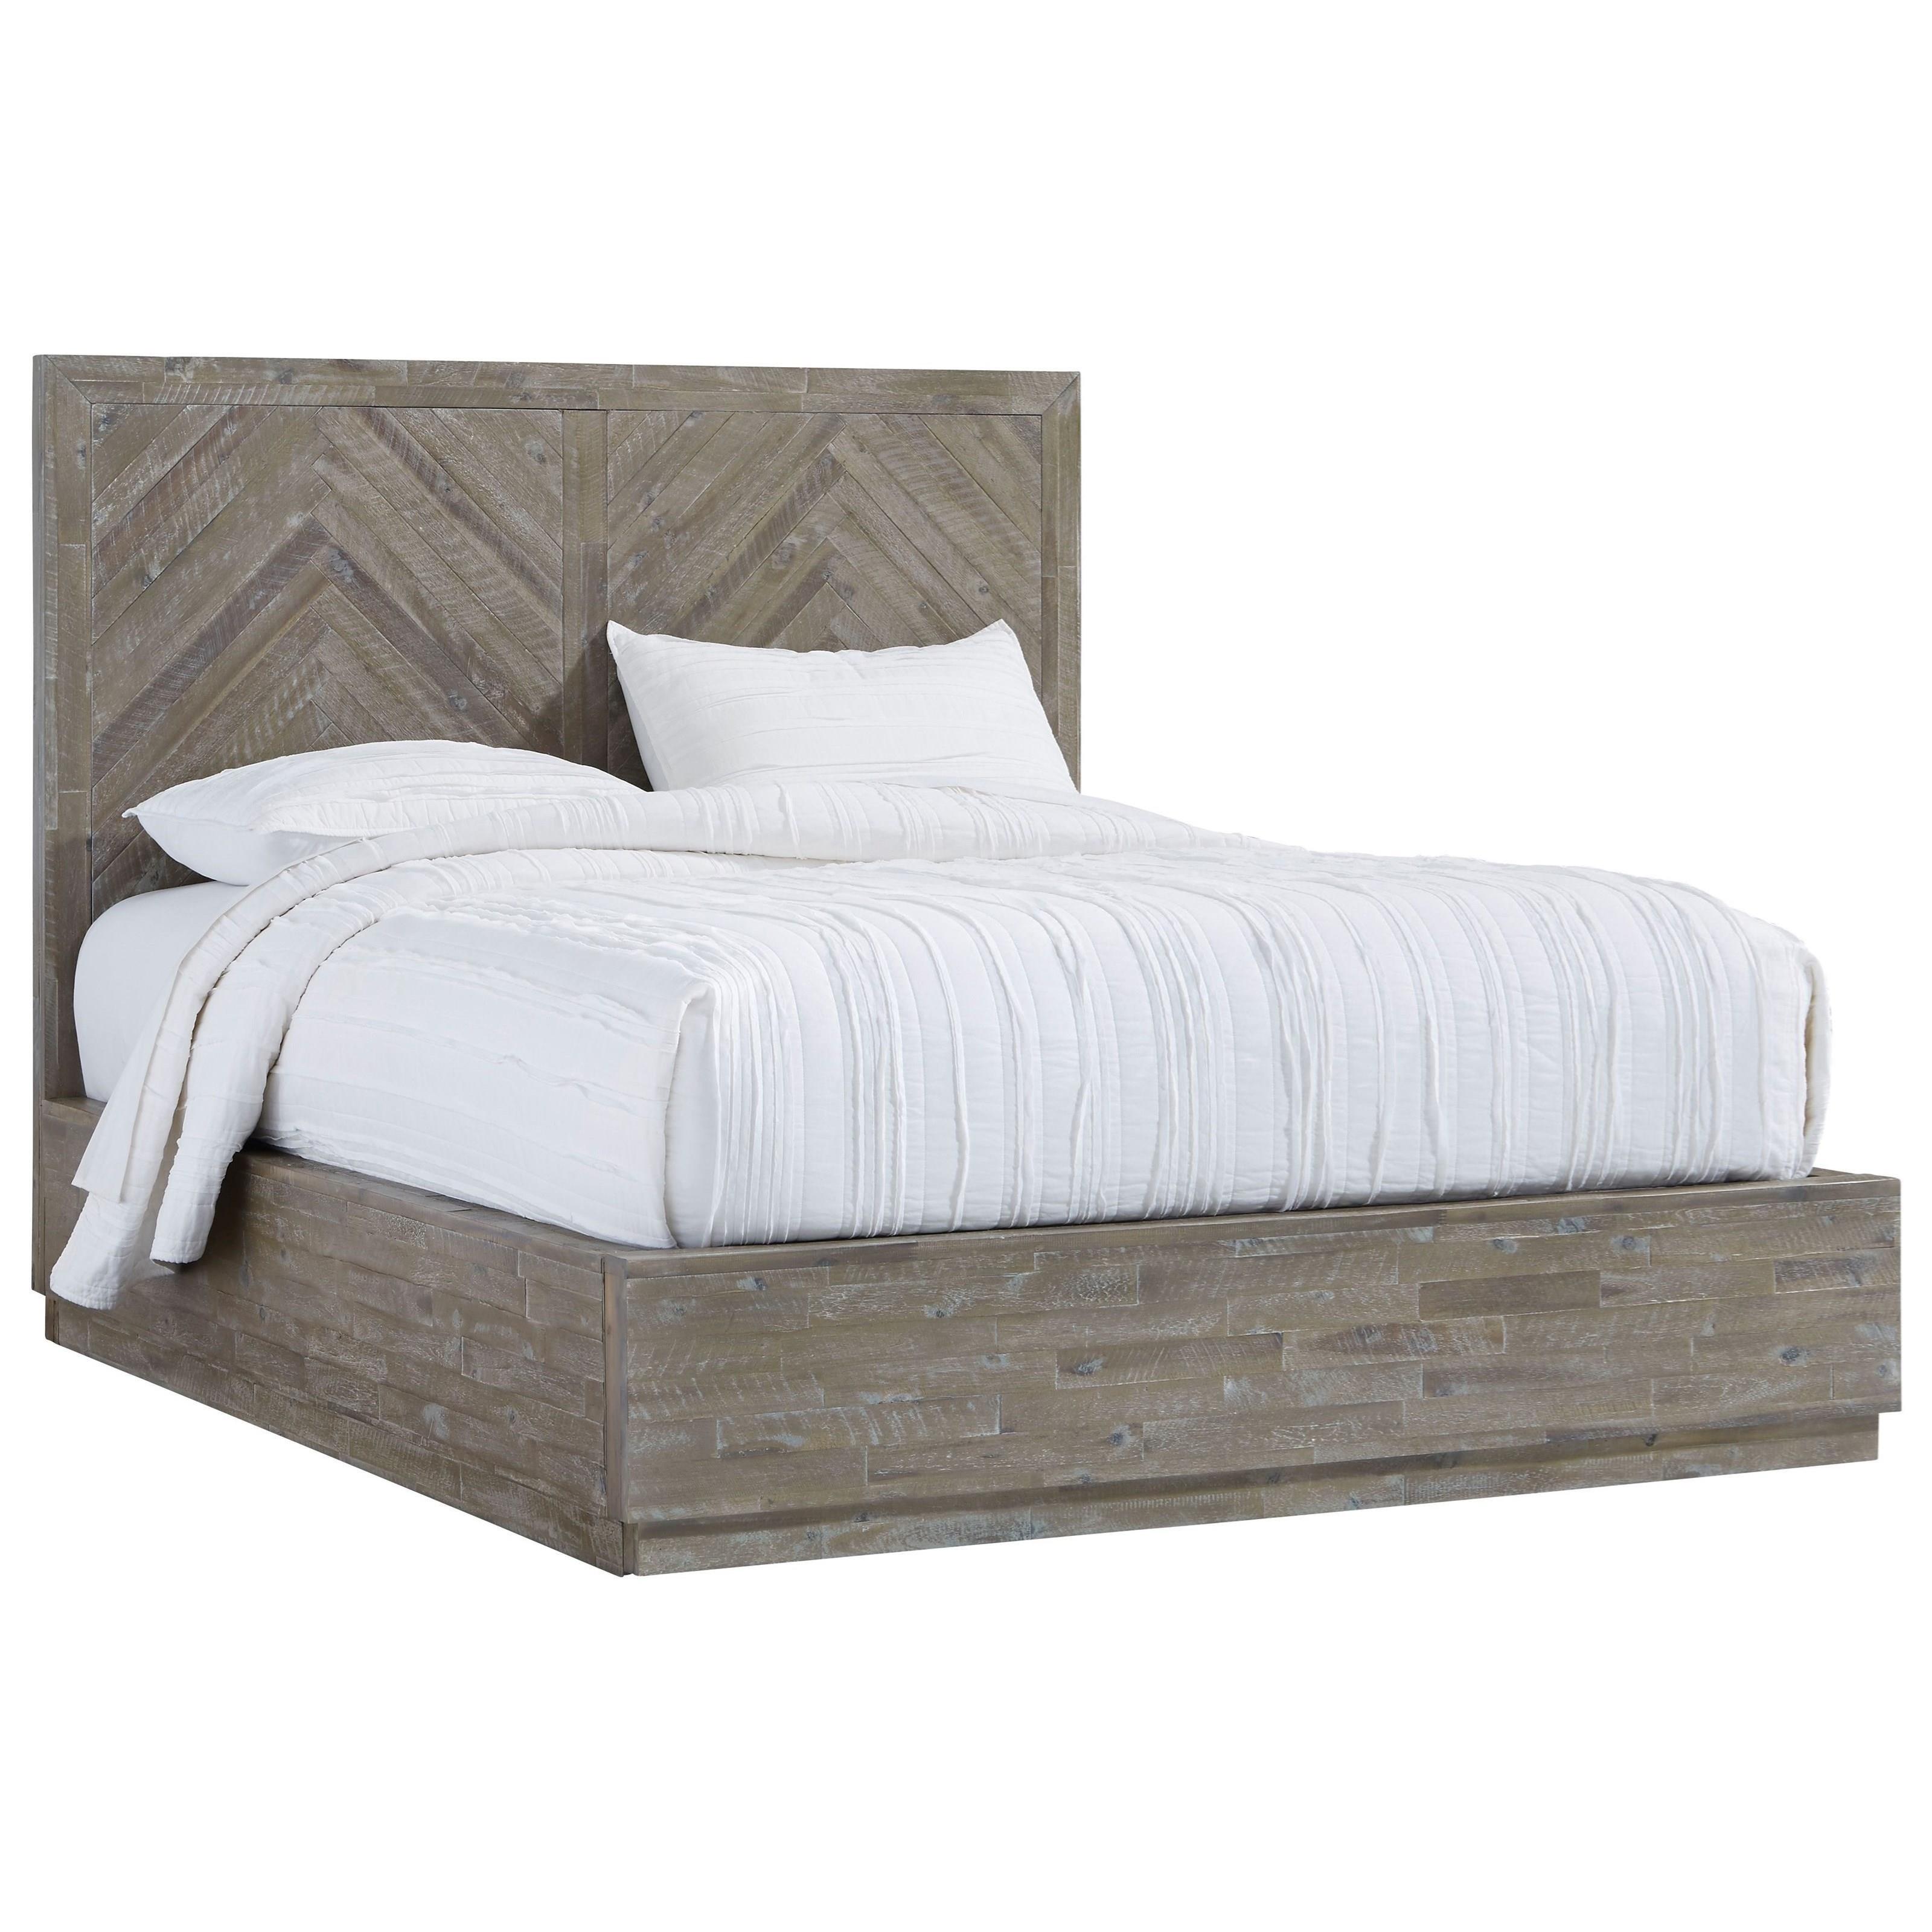 

    
Acacia Wood Rustic Latte Finish CAL King Platform Bed HERRINGBONE by Modus Furniture
